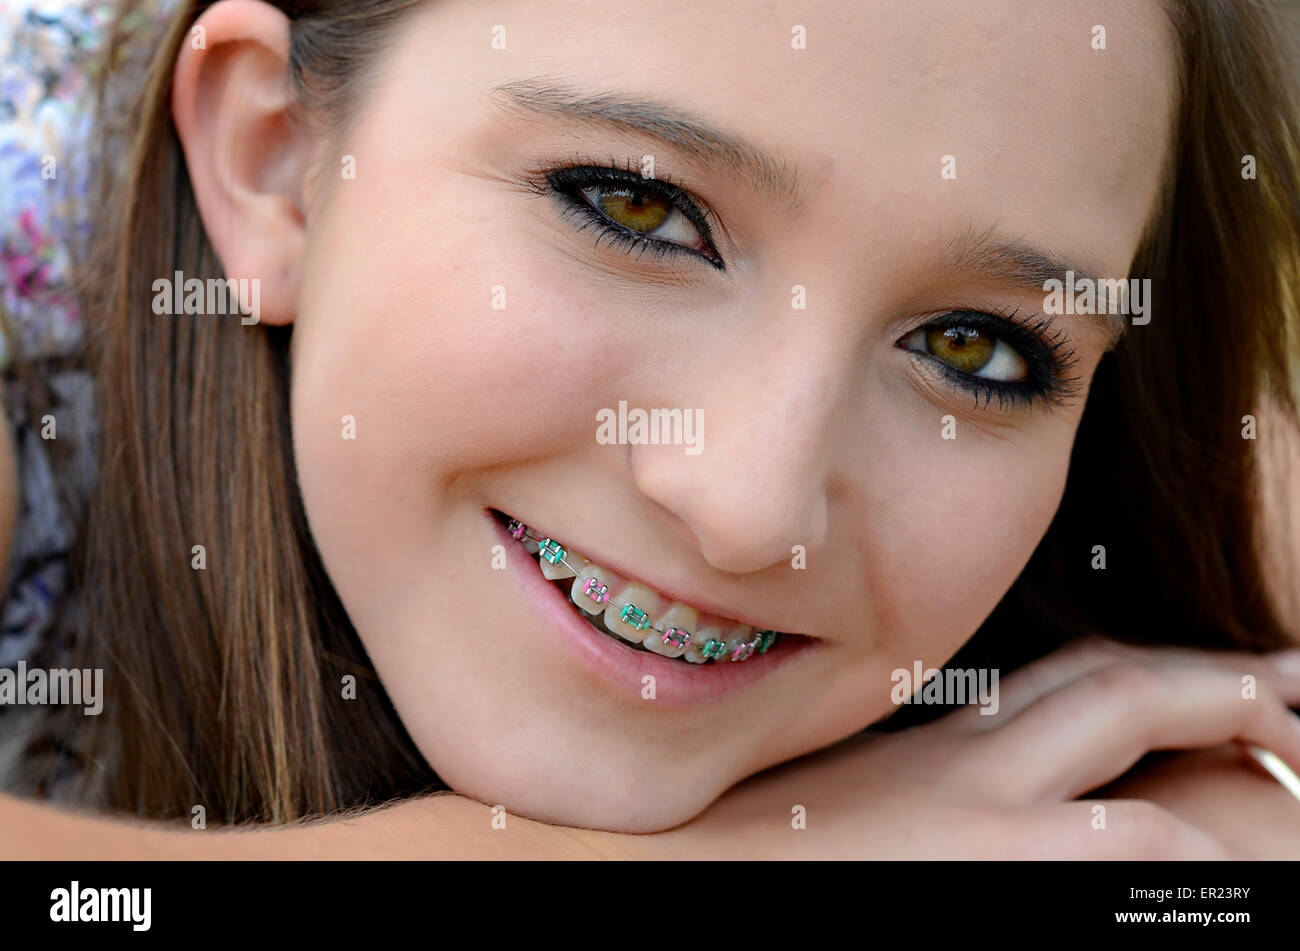 Una hermosa joven adolescente closeup con llaves en sus dientes. Foto de stock